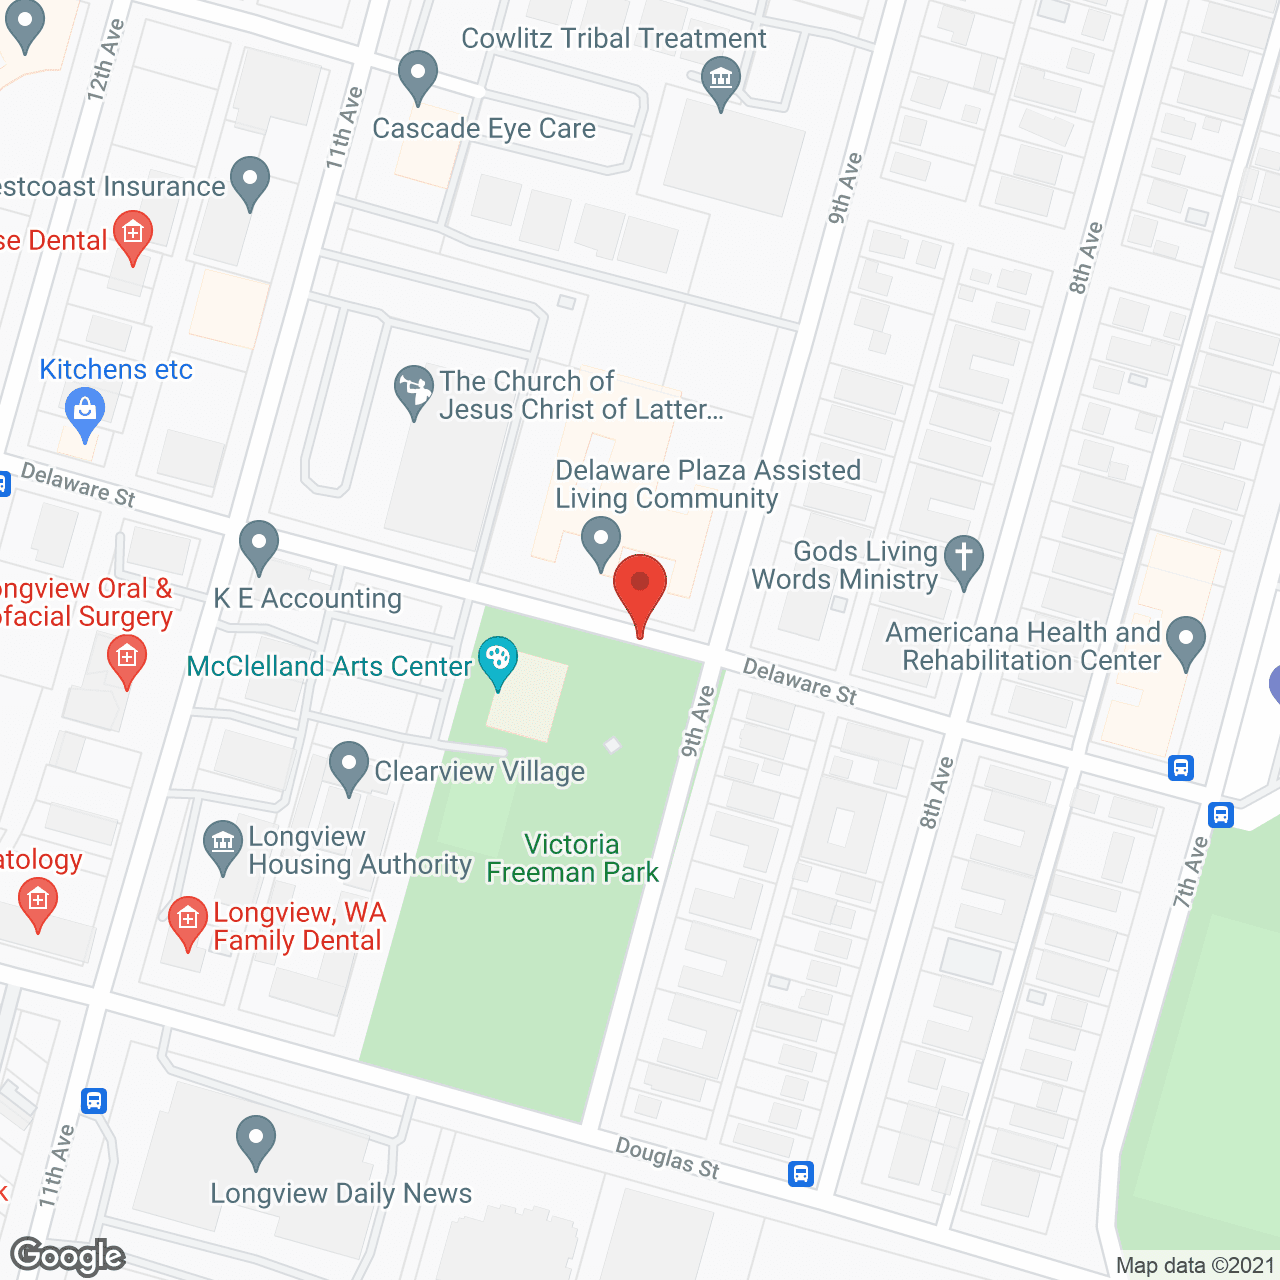 Delaware Plaza in google map